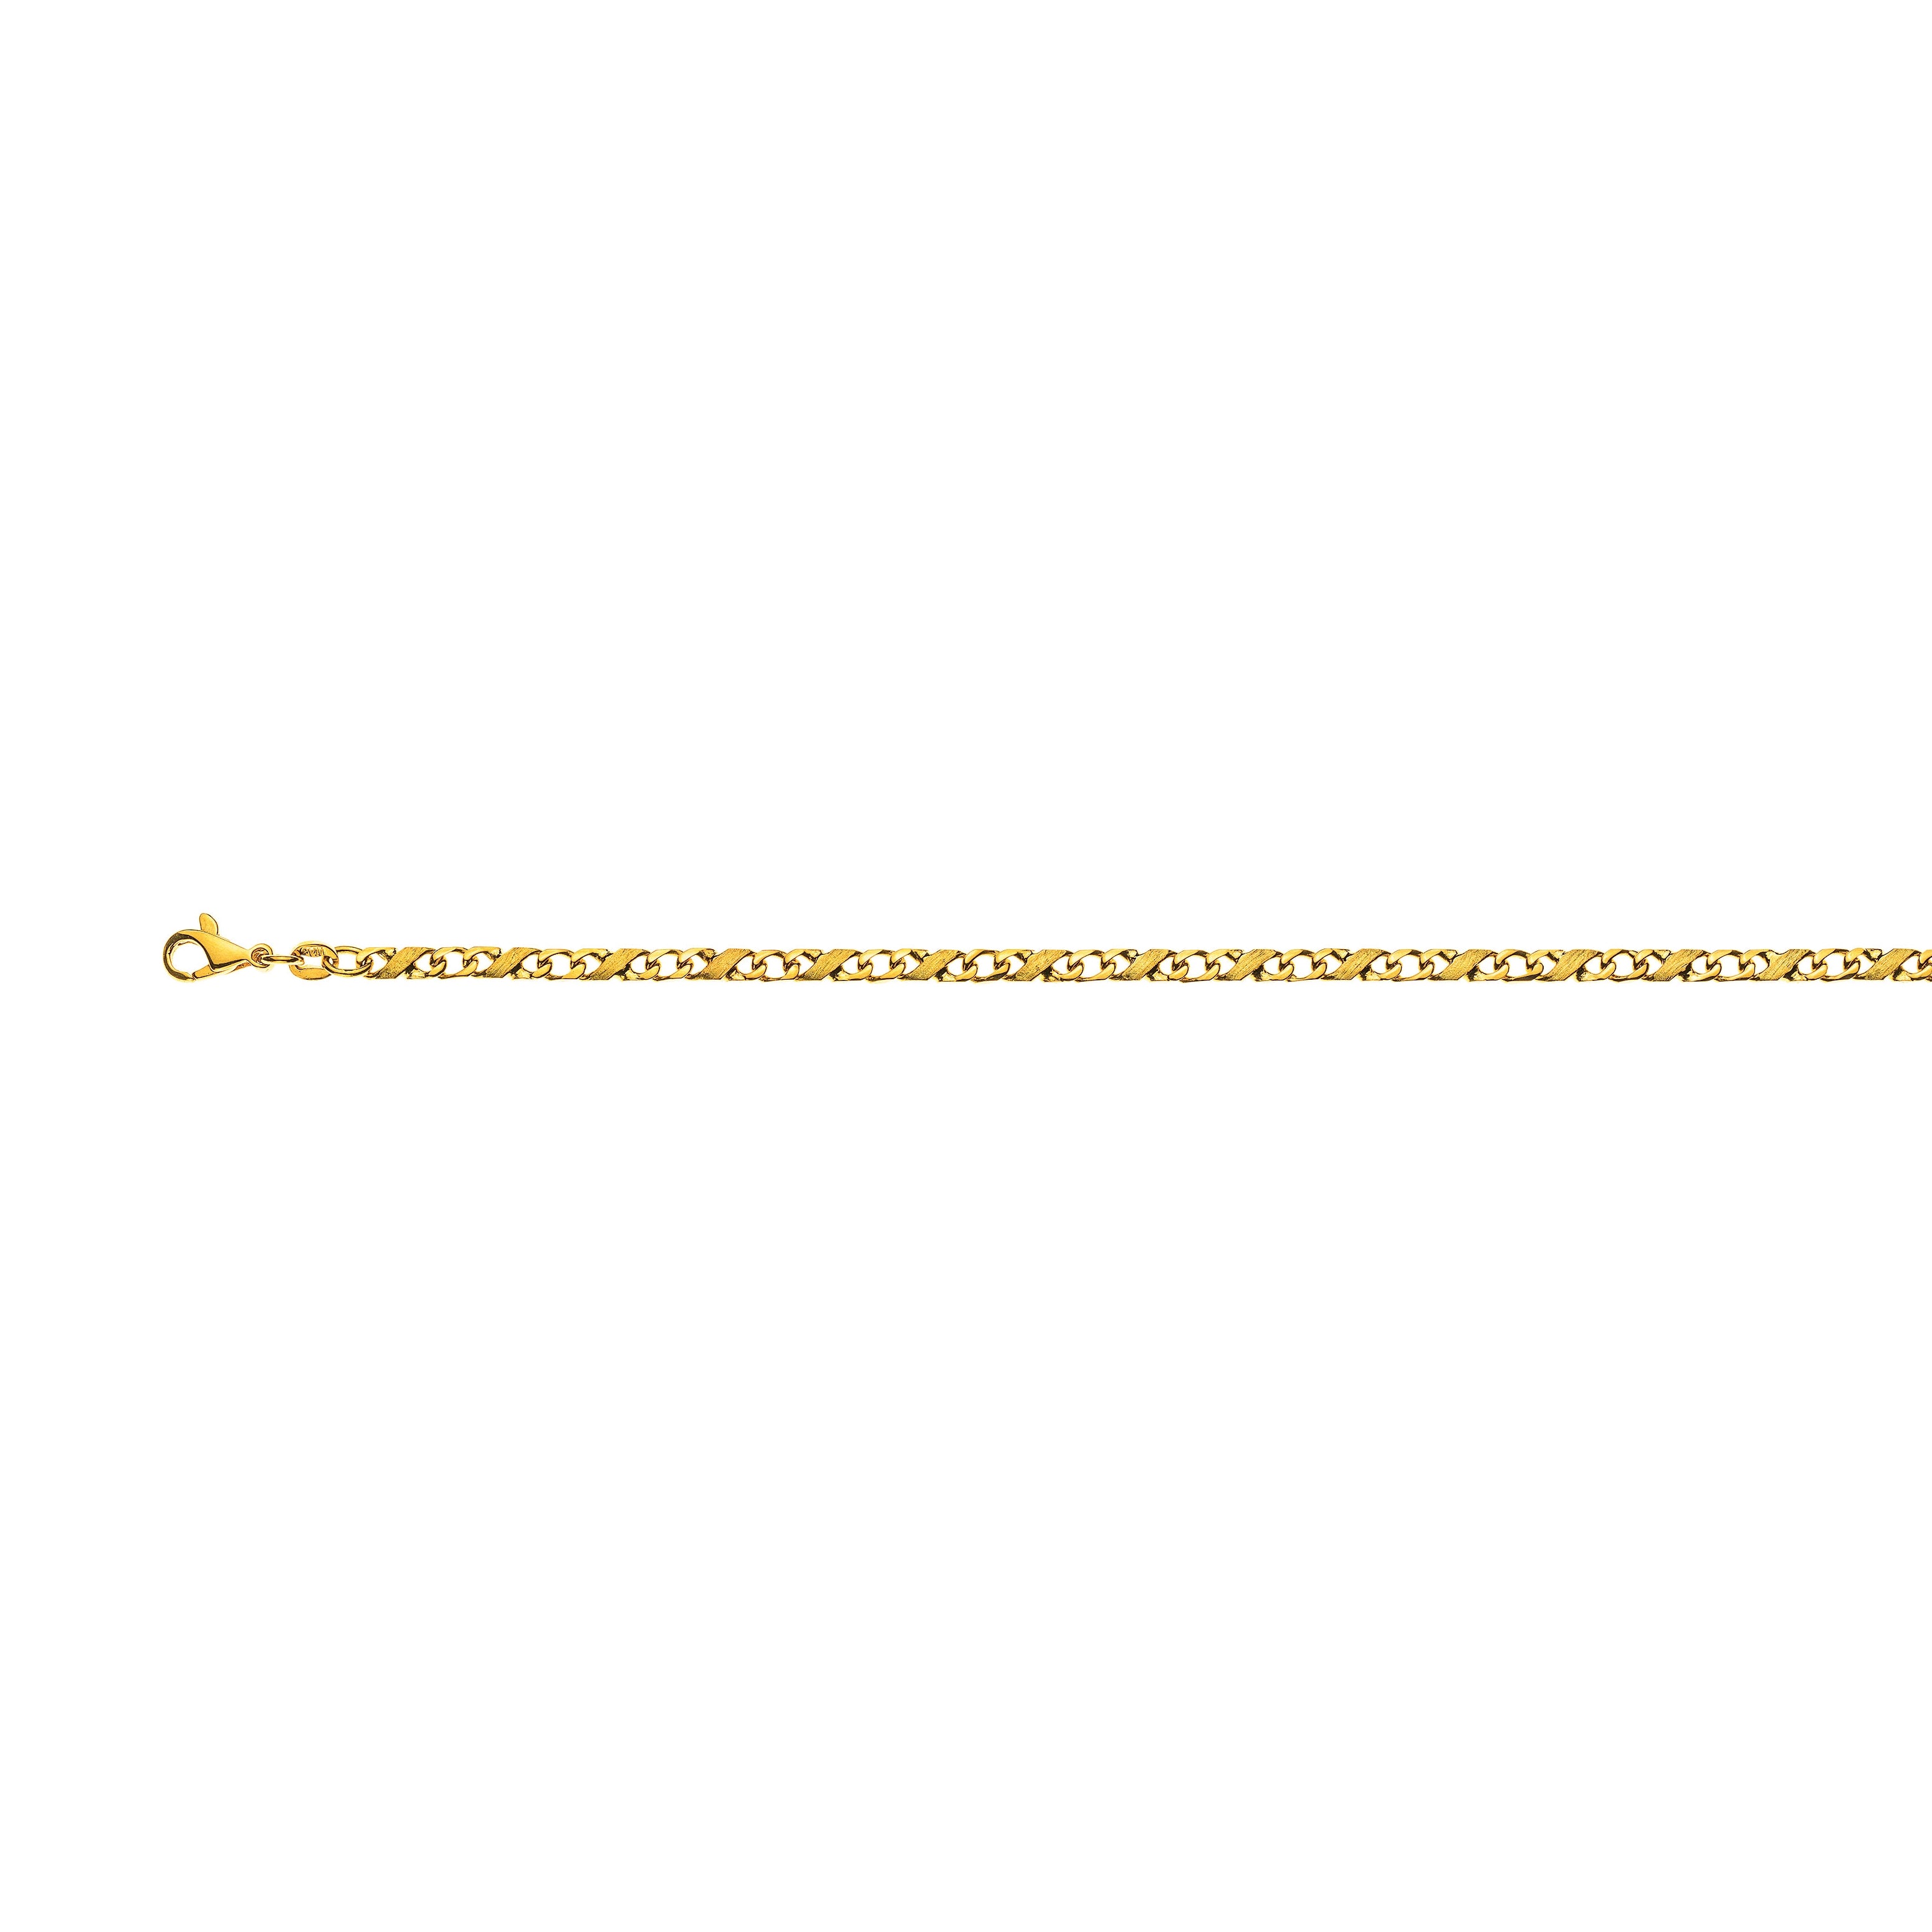 Gelbgold 750 Collier Carrera: Poliert & Satiniert, ca. 3,5mm Breite